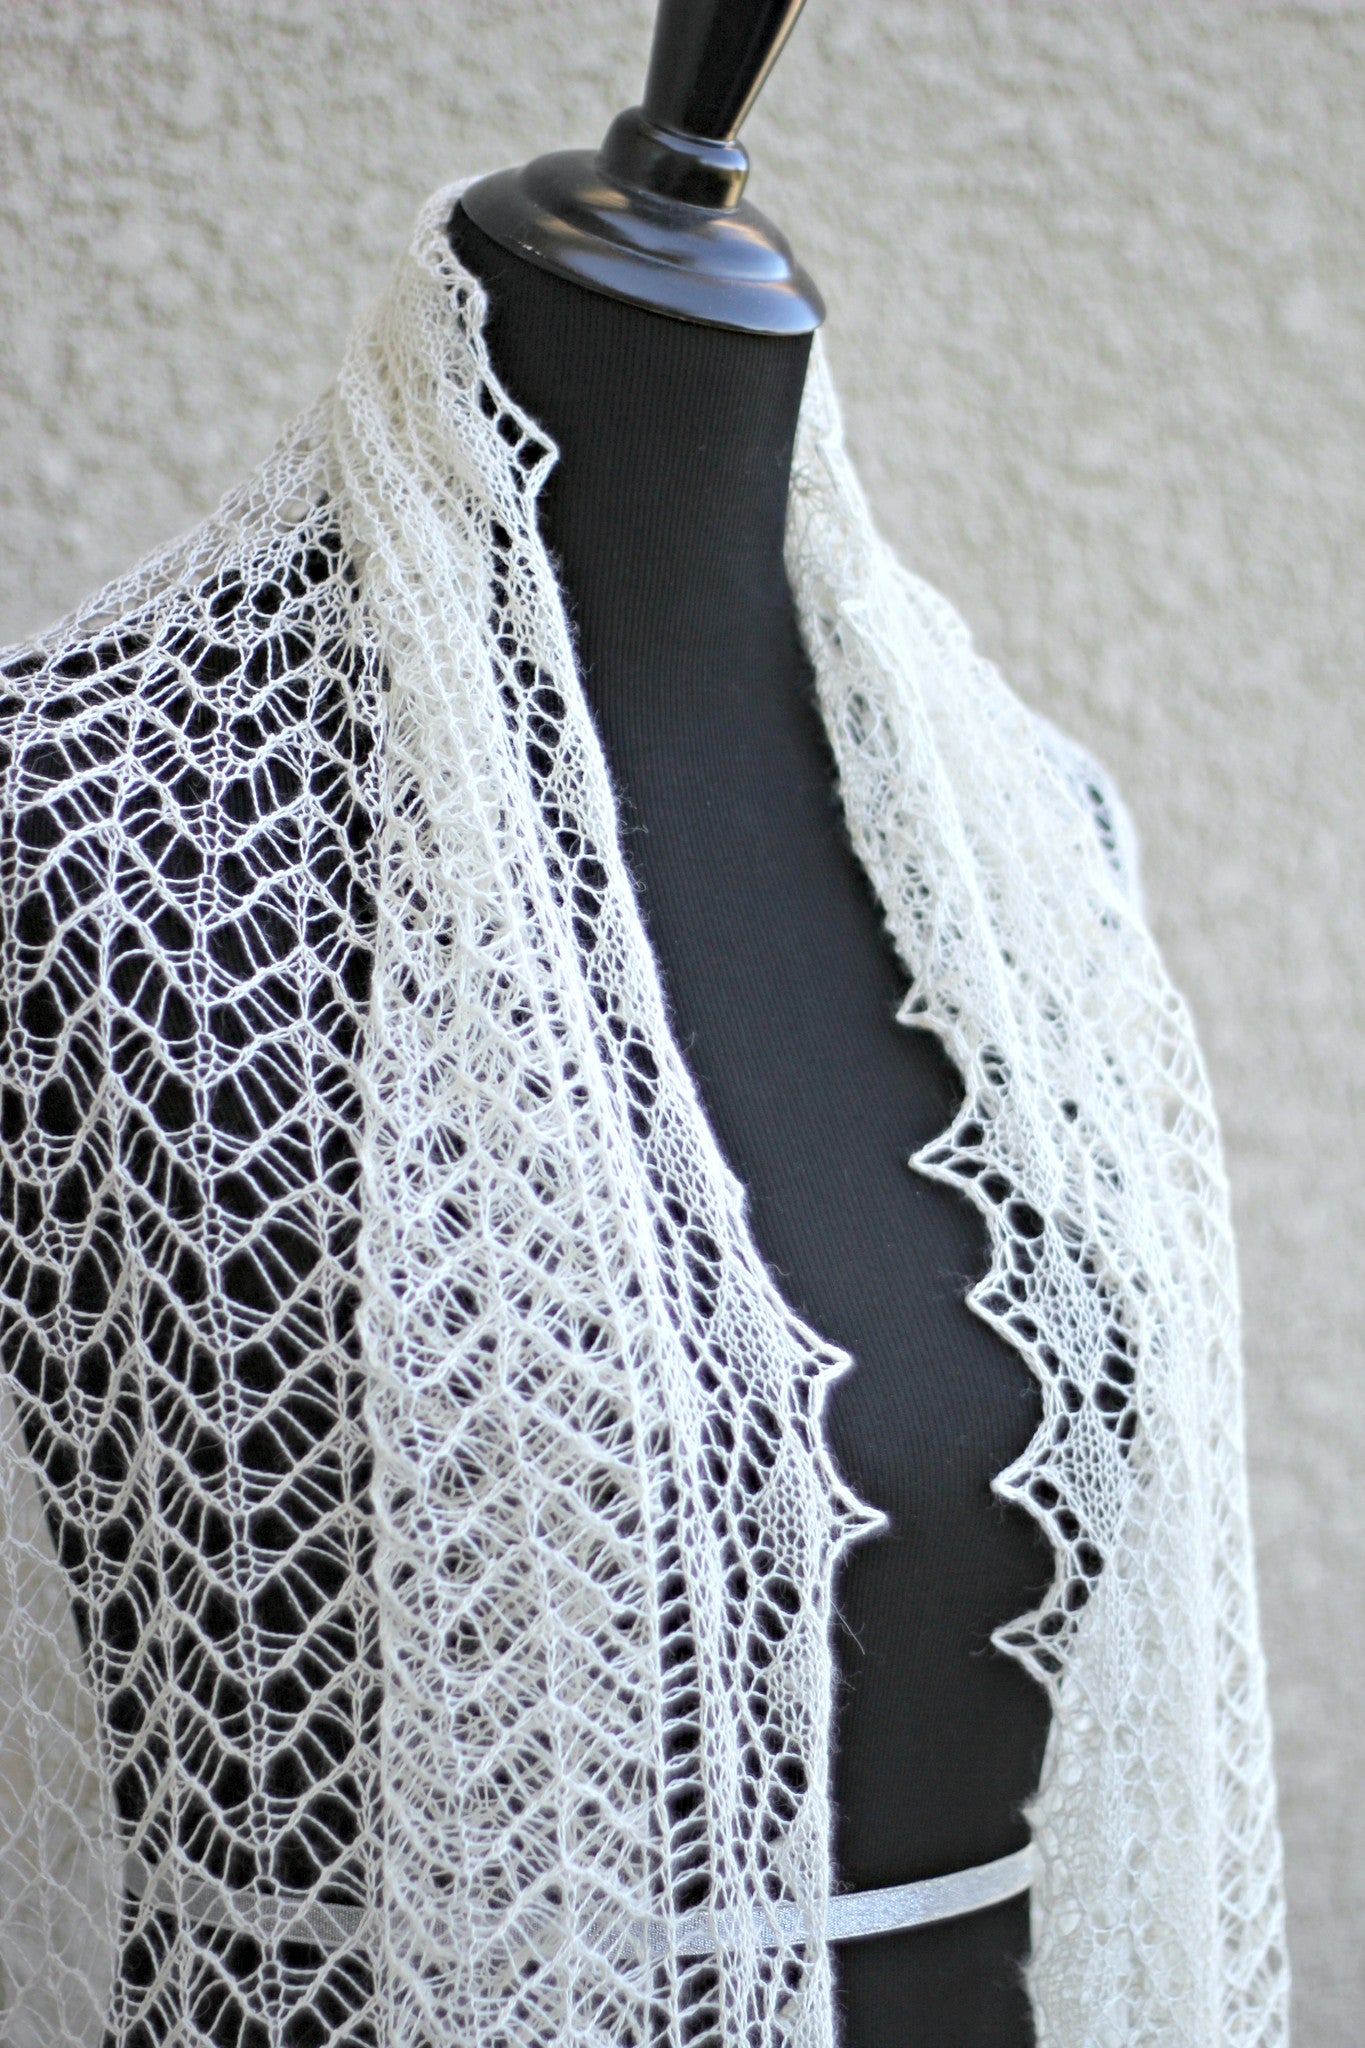 Waterfall shawl pattern